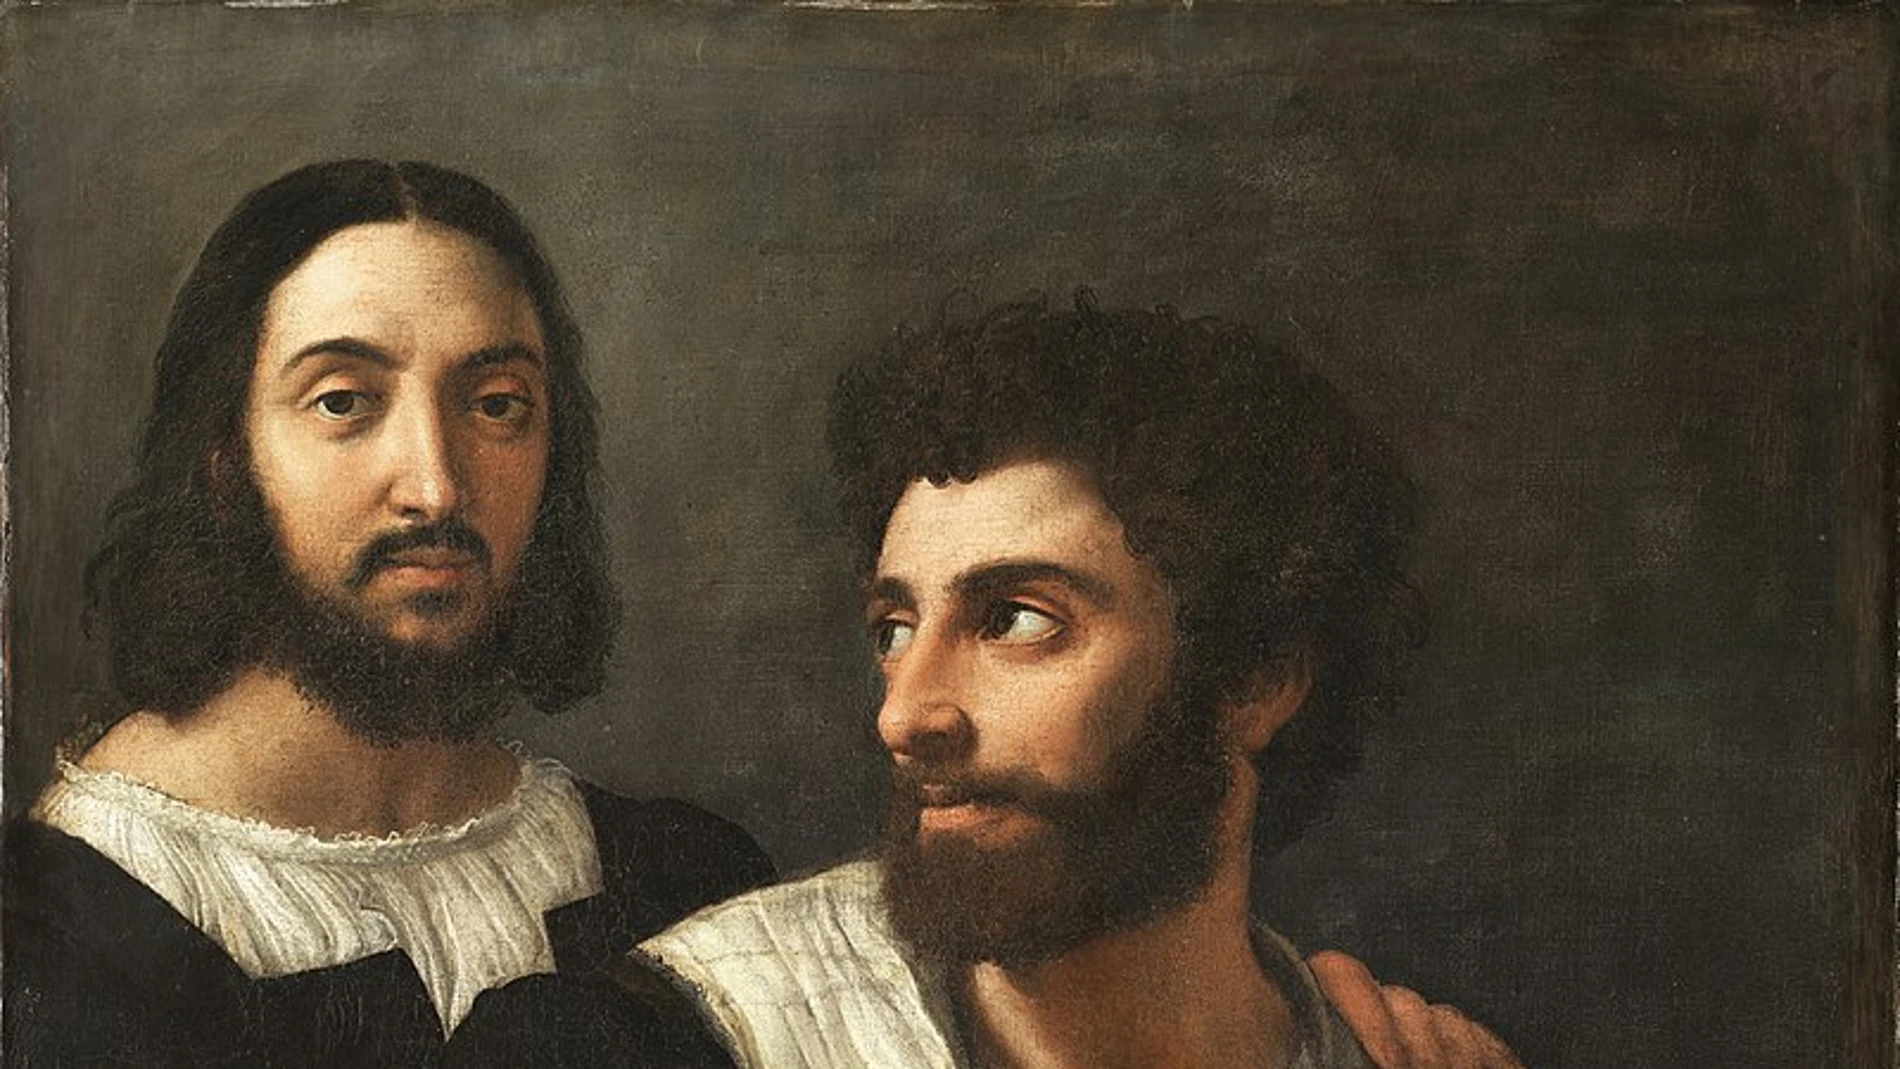 "Autorretrato con un amigo". Rafael (detrás) se dibujó en esta conocida obra